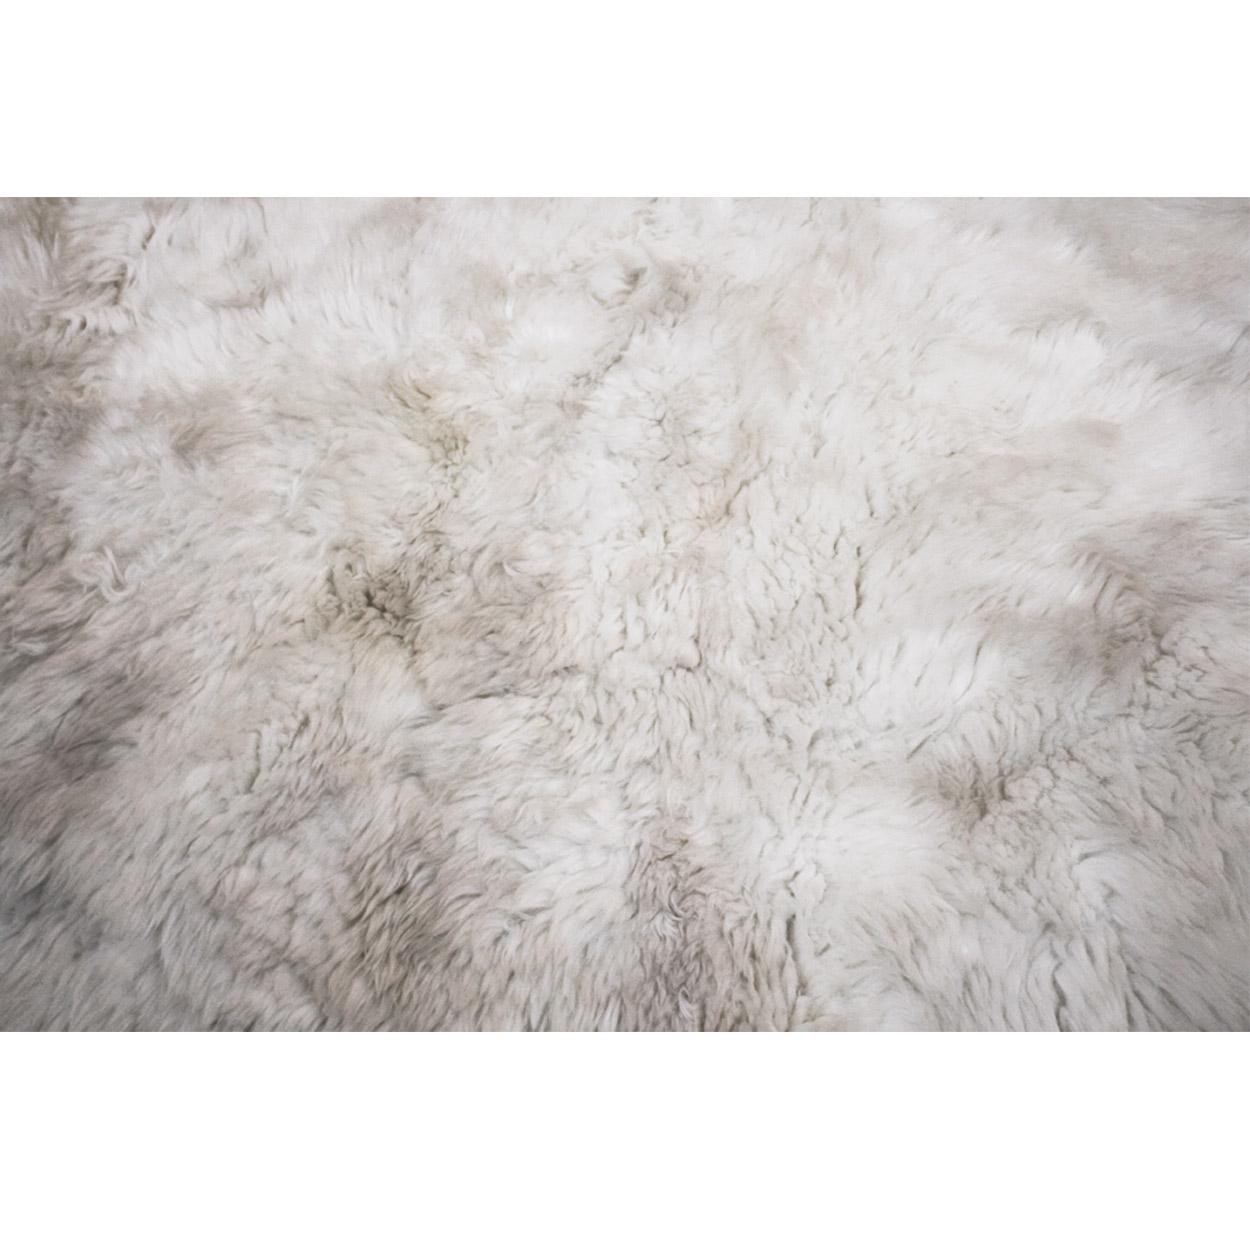 Teppich aus natürlichem Schafshaar.

Abmessungen: 240 x 220 cm